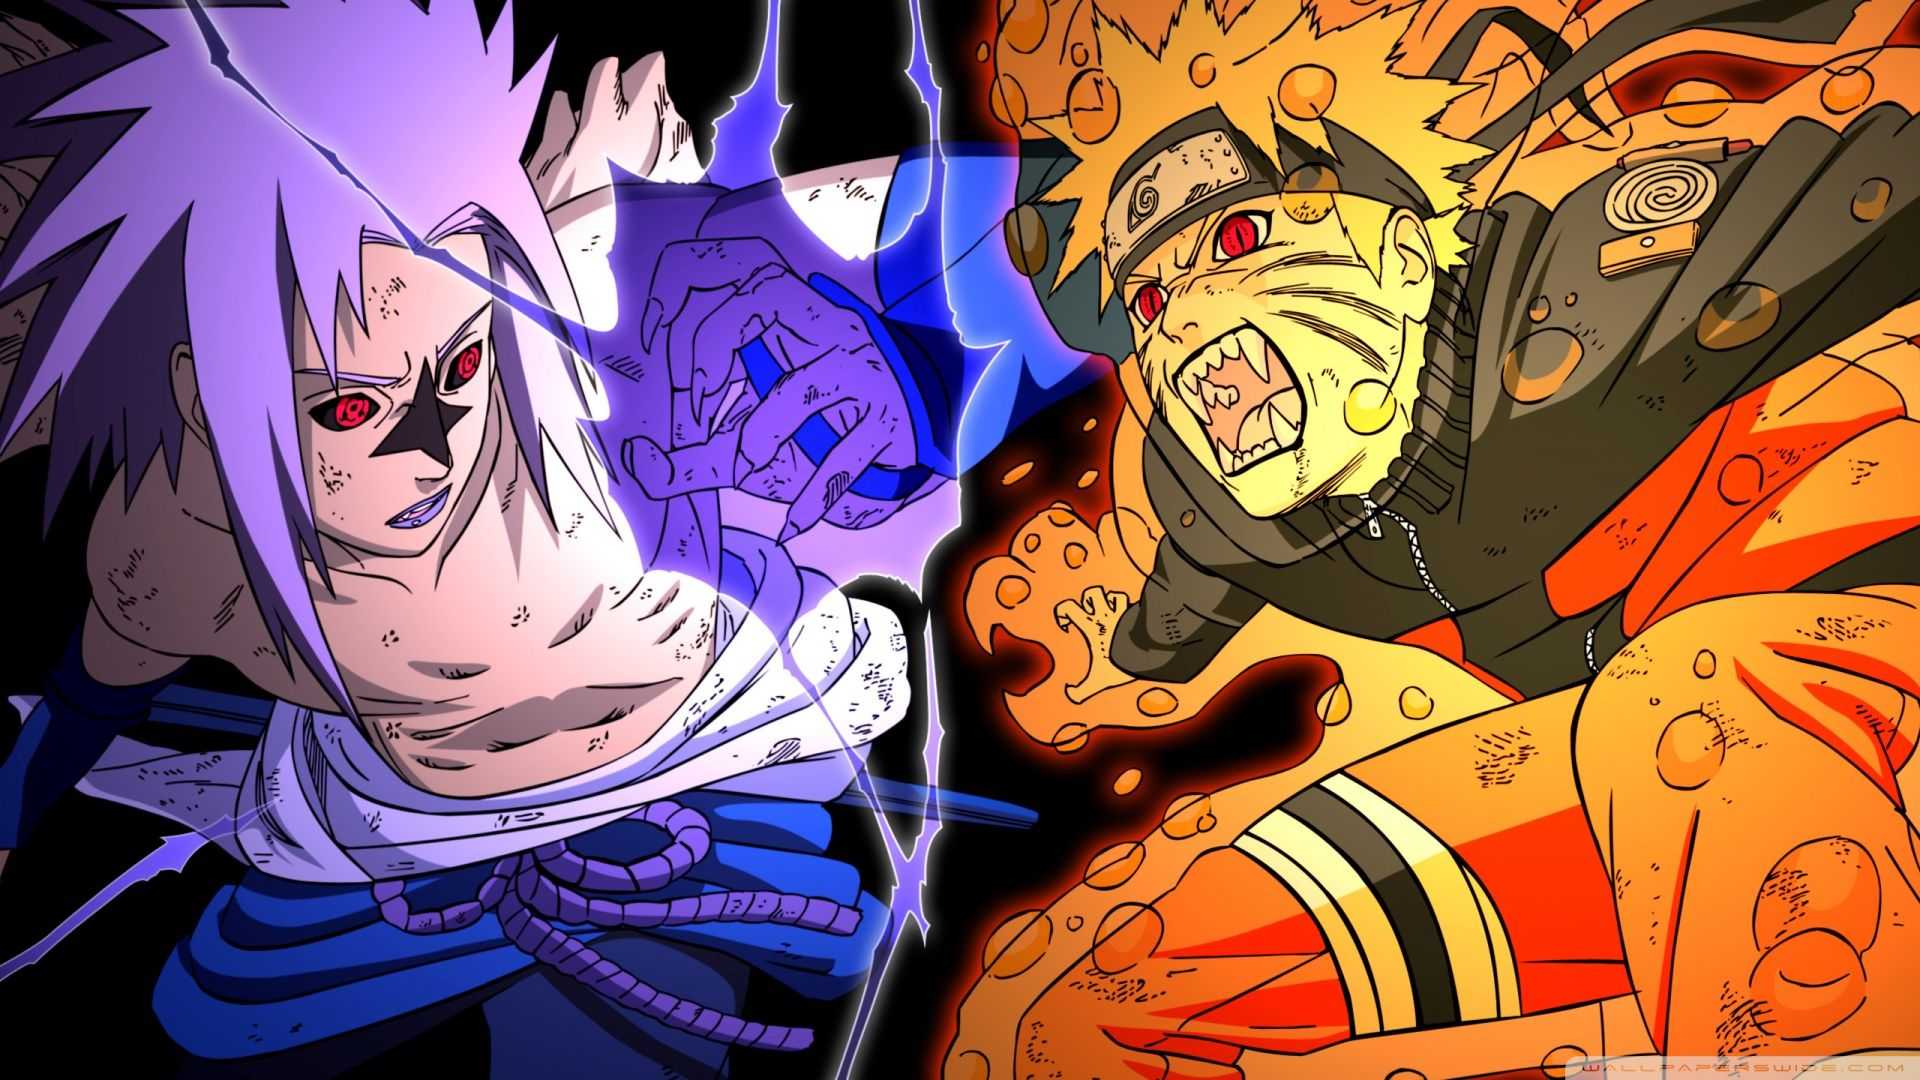 Naruto and Sasuke Wallpaper - NawPic